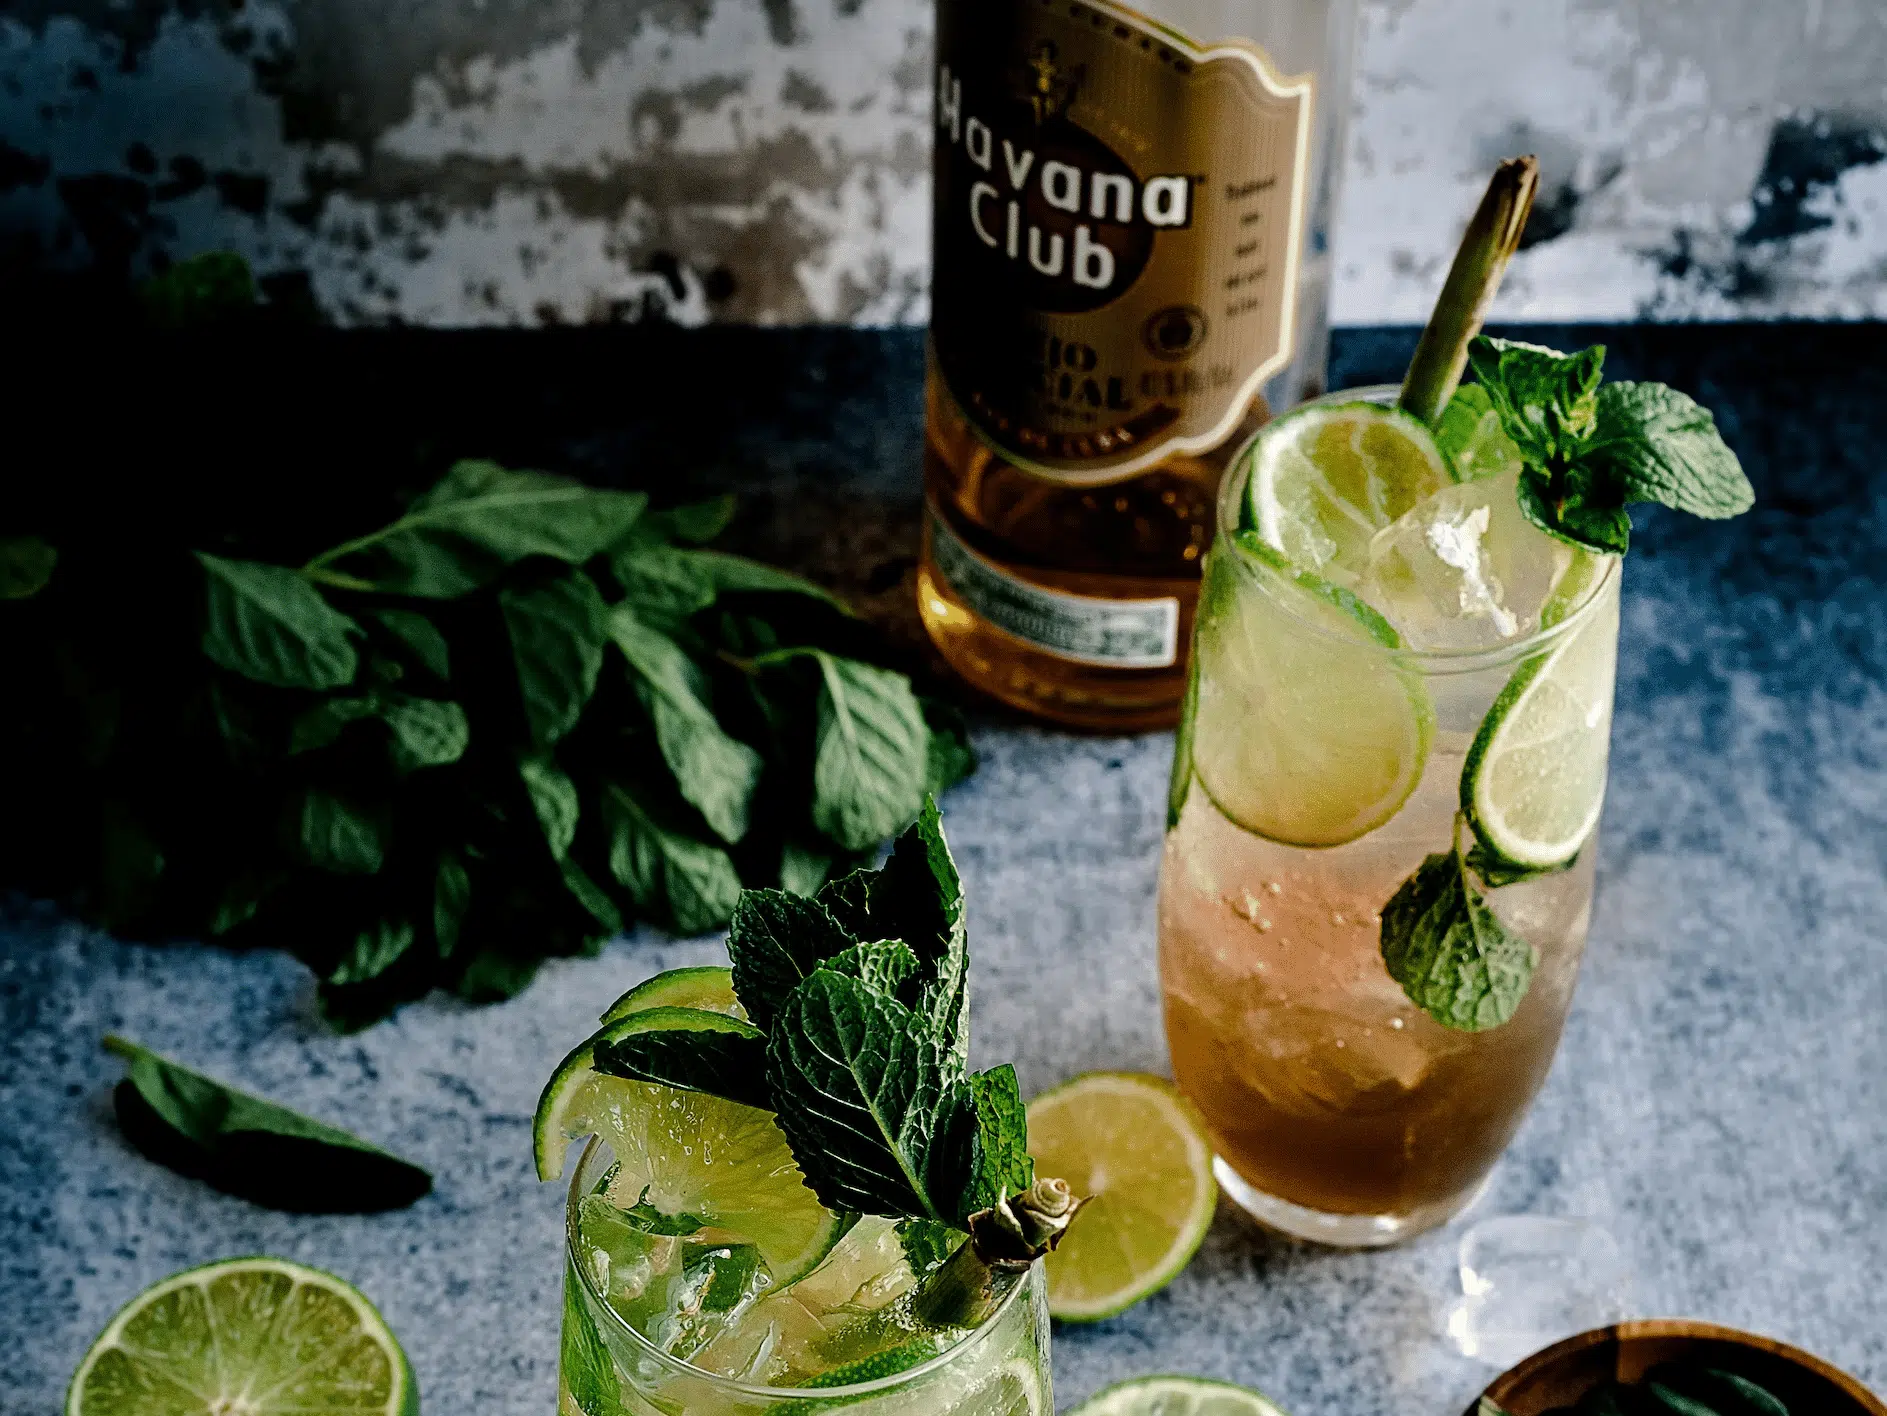 Drinks in Cuba: Rum